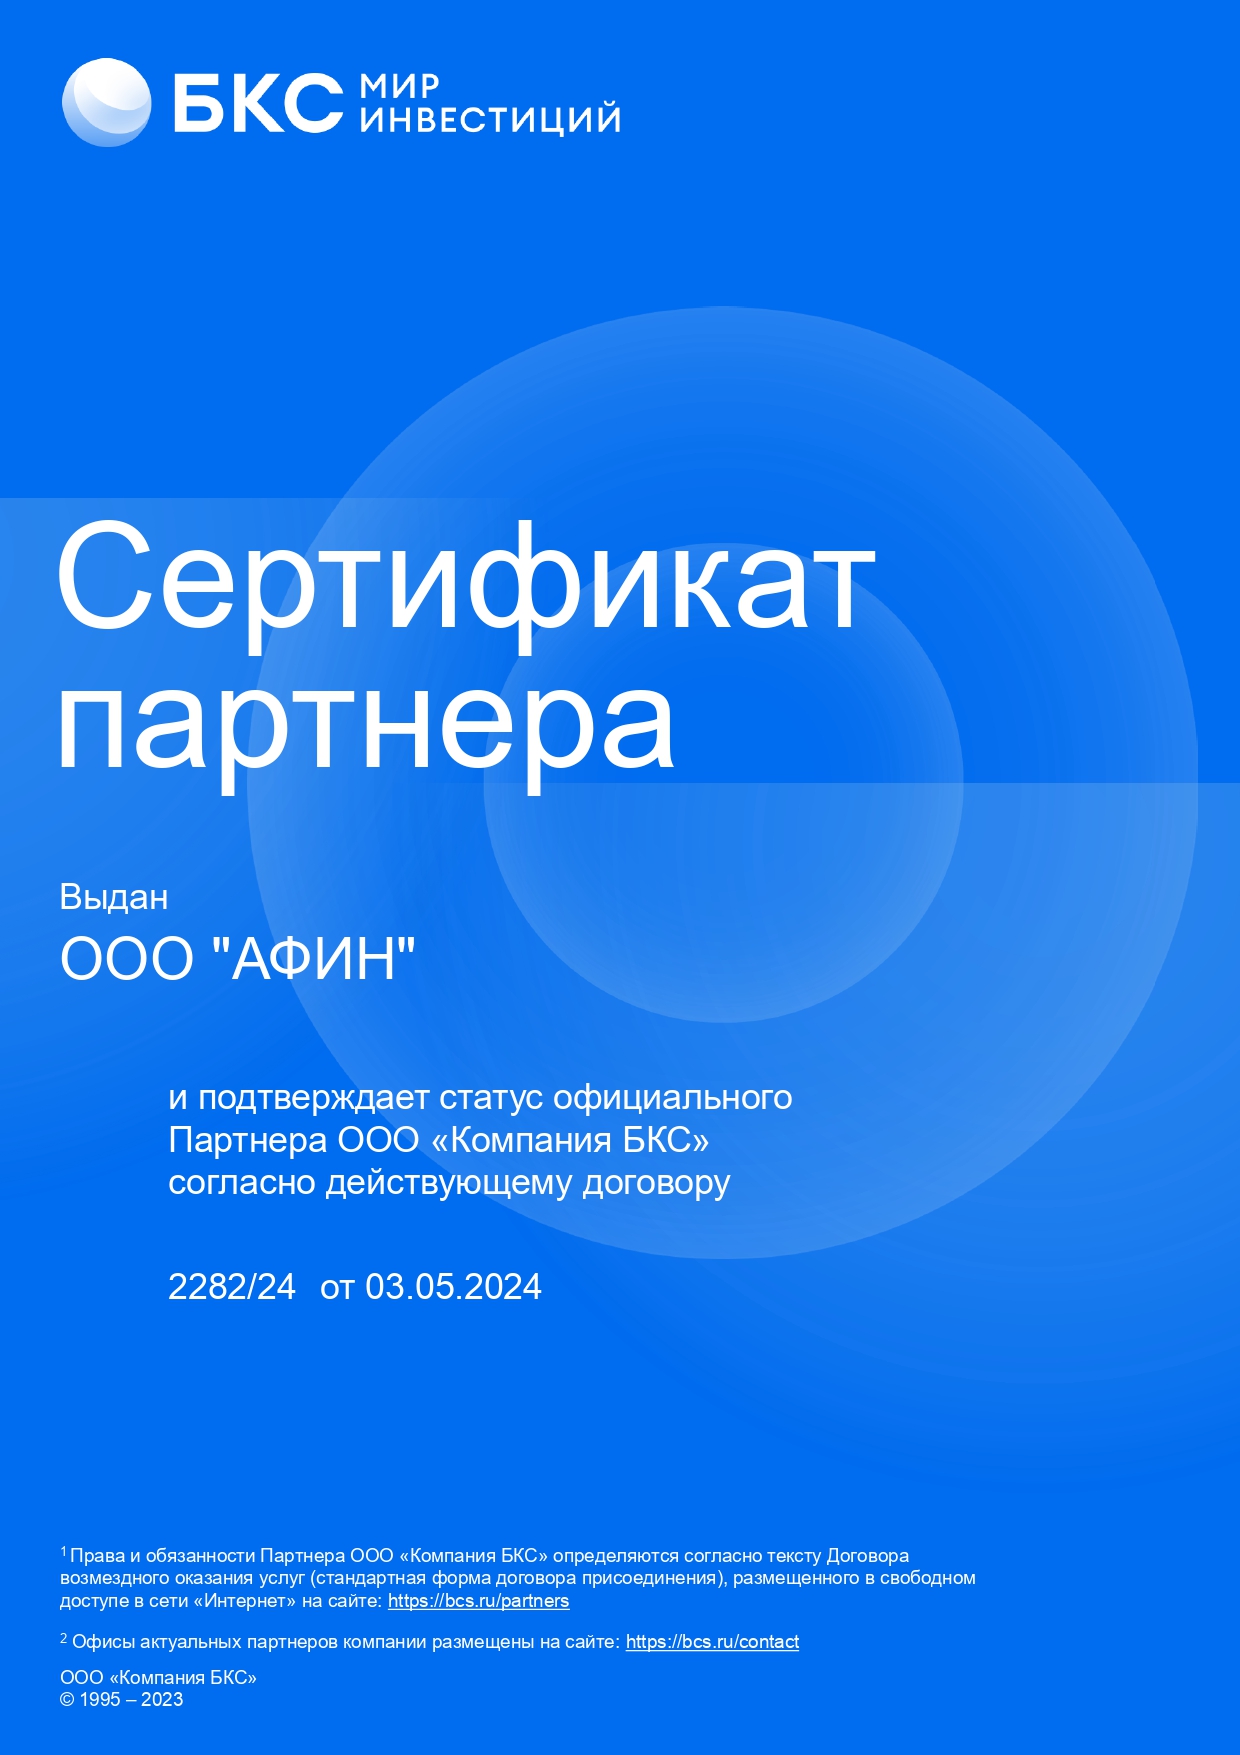 Официальный партнер брокера БКС с лицензий от Центрального банка России